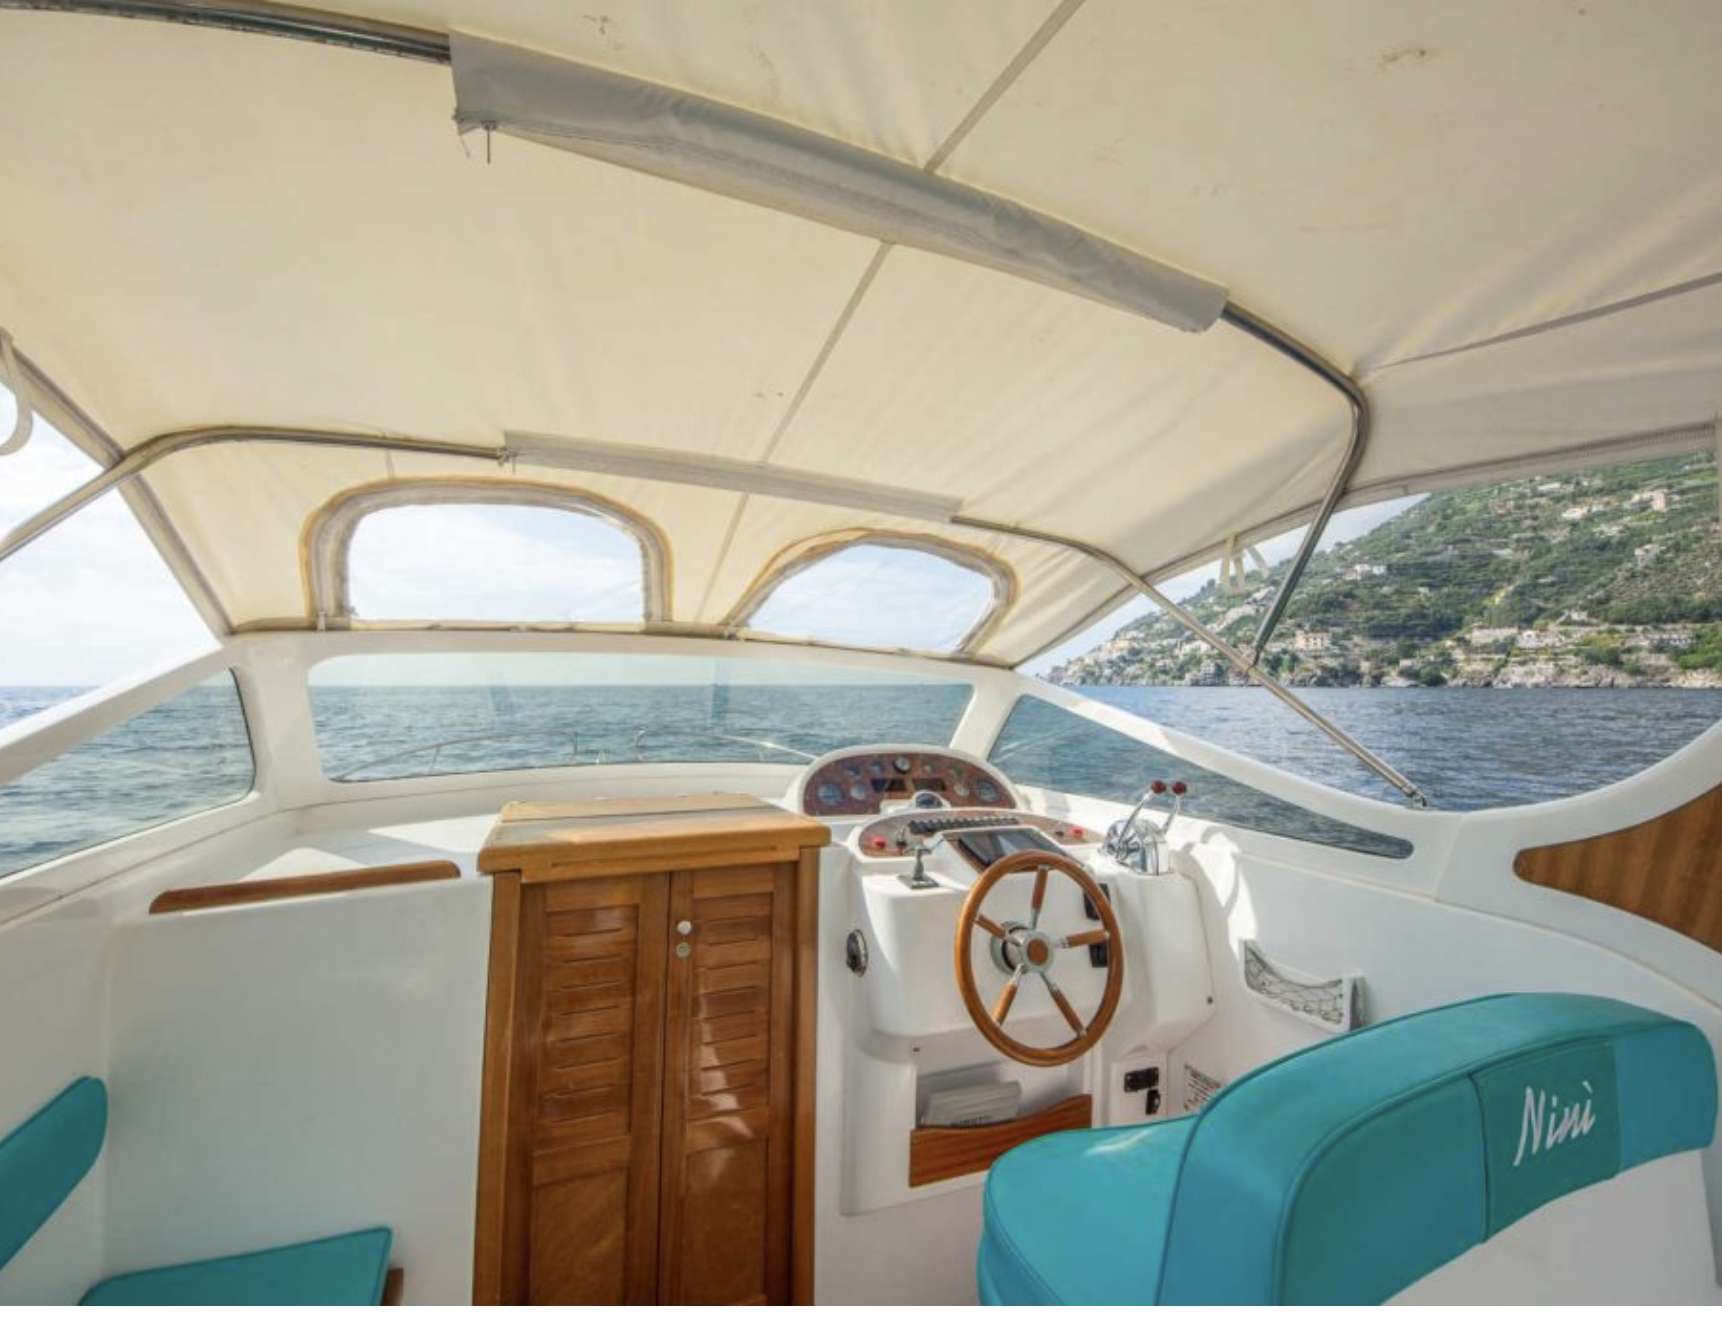 Sorentino - Yacht Charter Amalfi Coast & Boat hire in Italy Campania Amalfi Coast Amalfi Amalfi 4